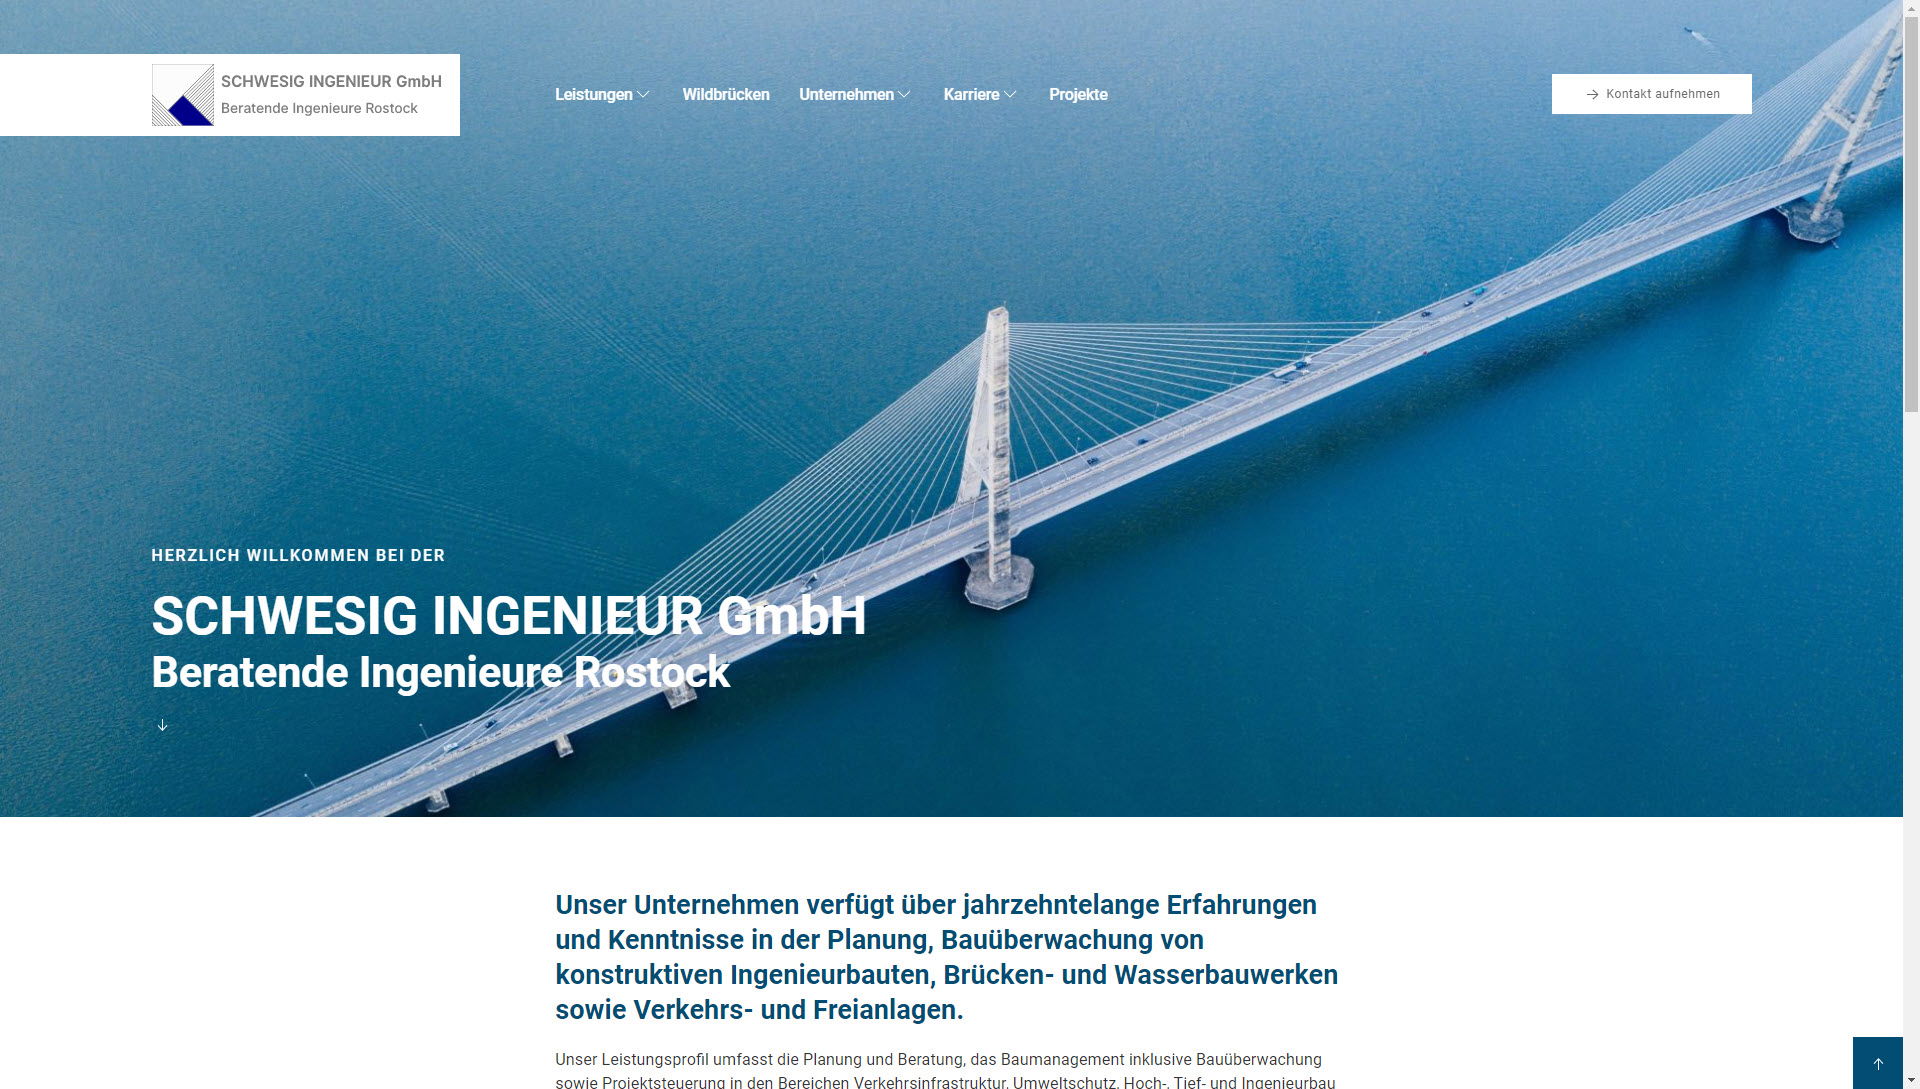 SCHWESIG INGENIEUR GmbH